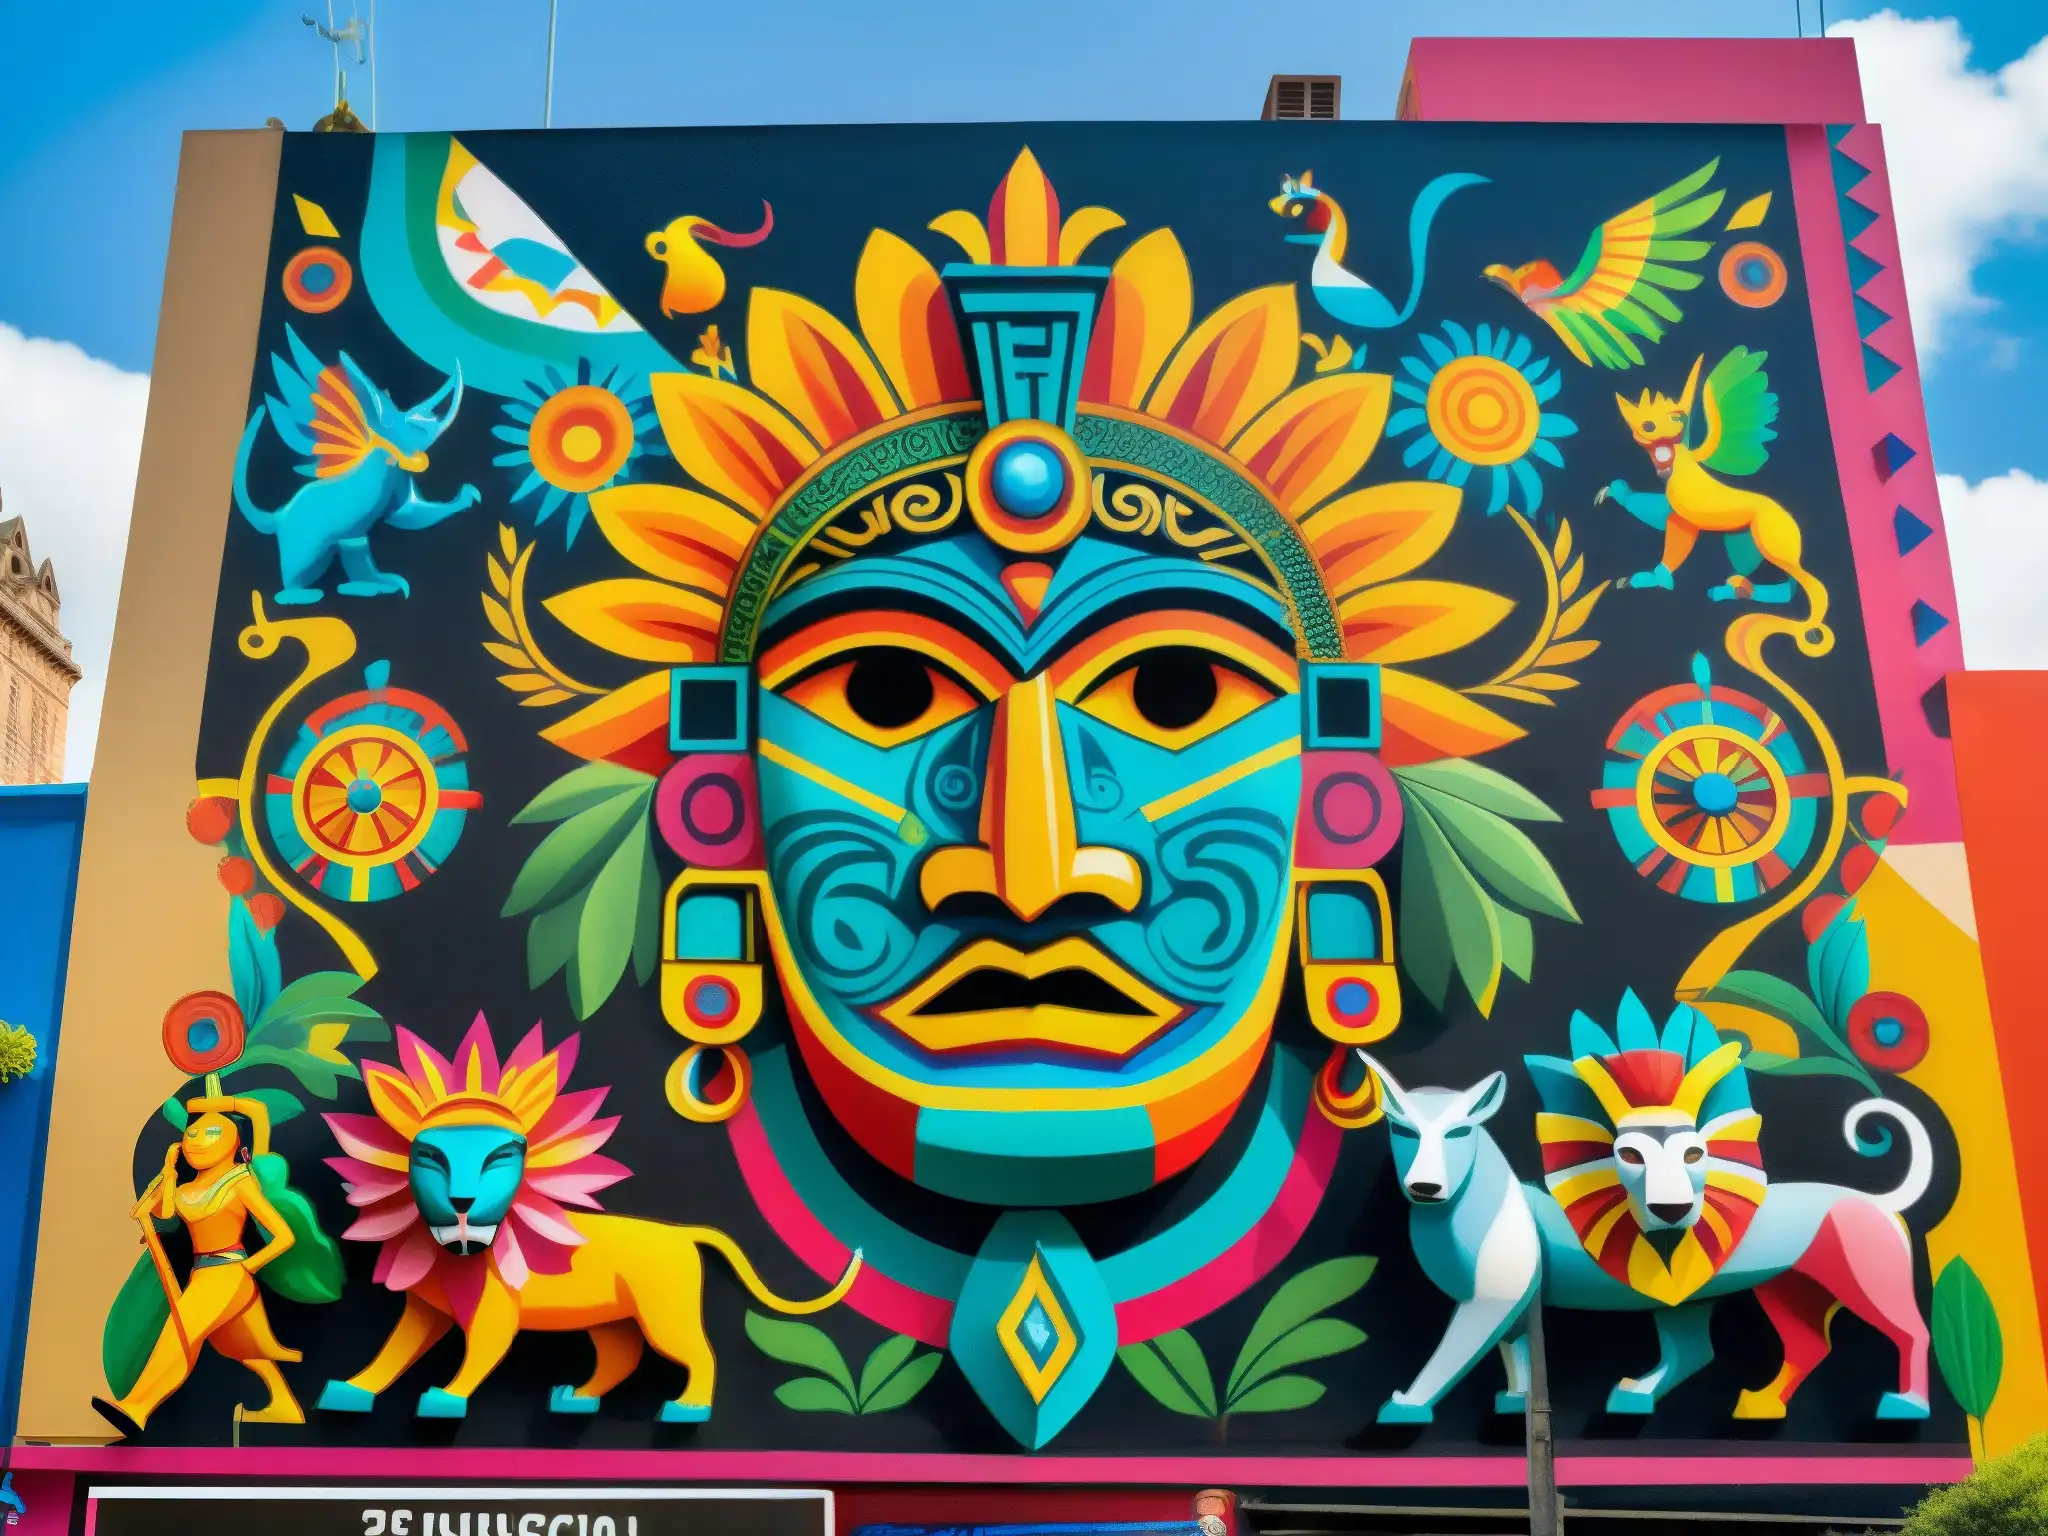 Vibrante mural urbano en México City que fusiona mitos, leyendas y la exploración de la vida moderna